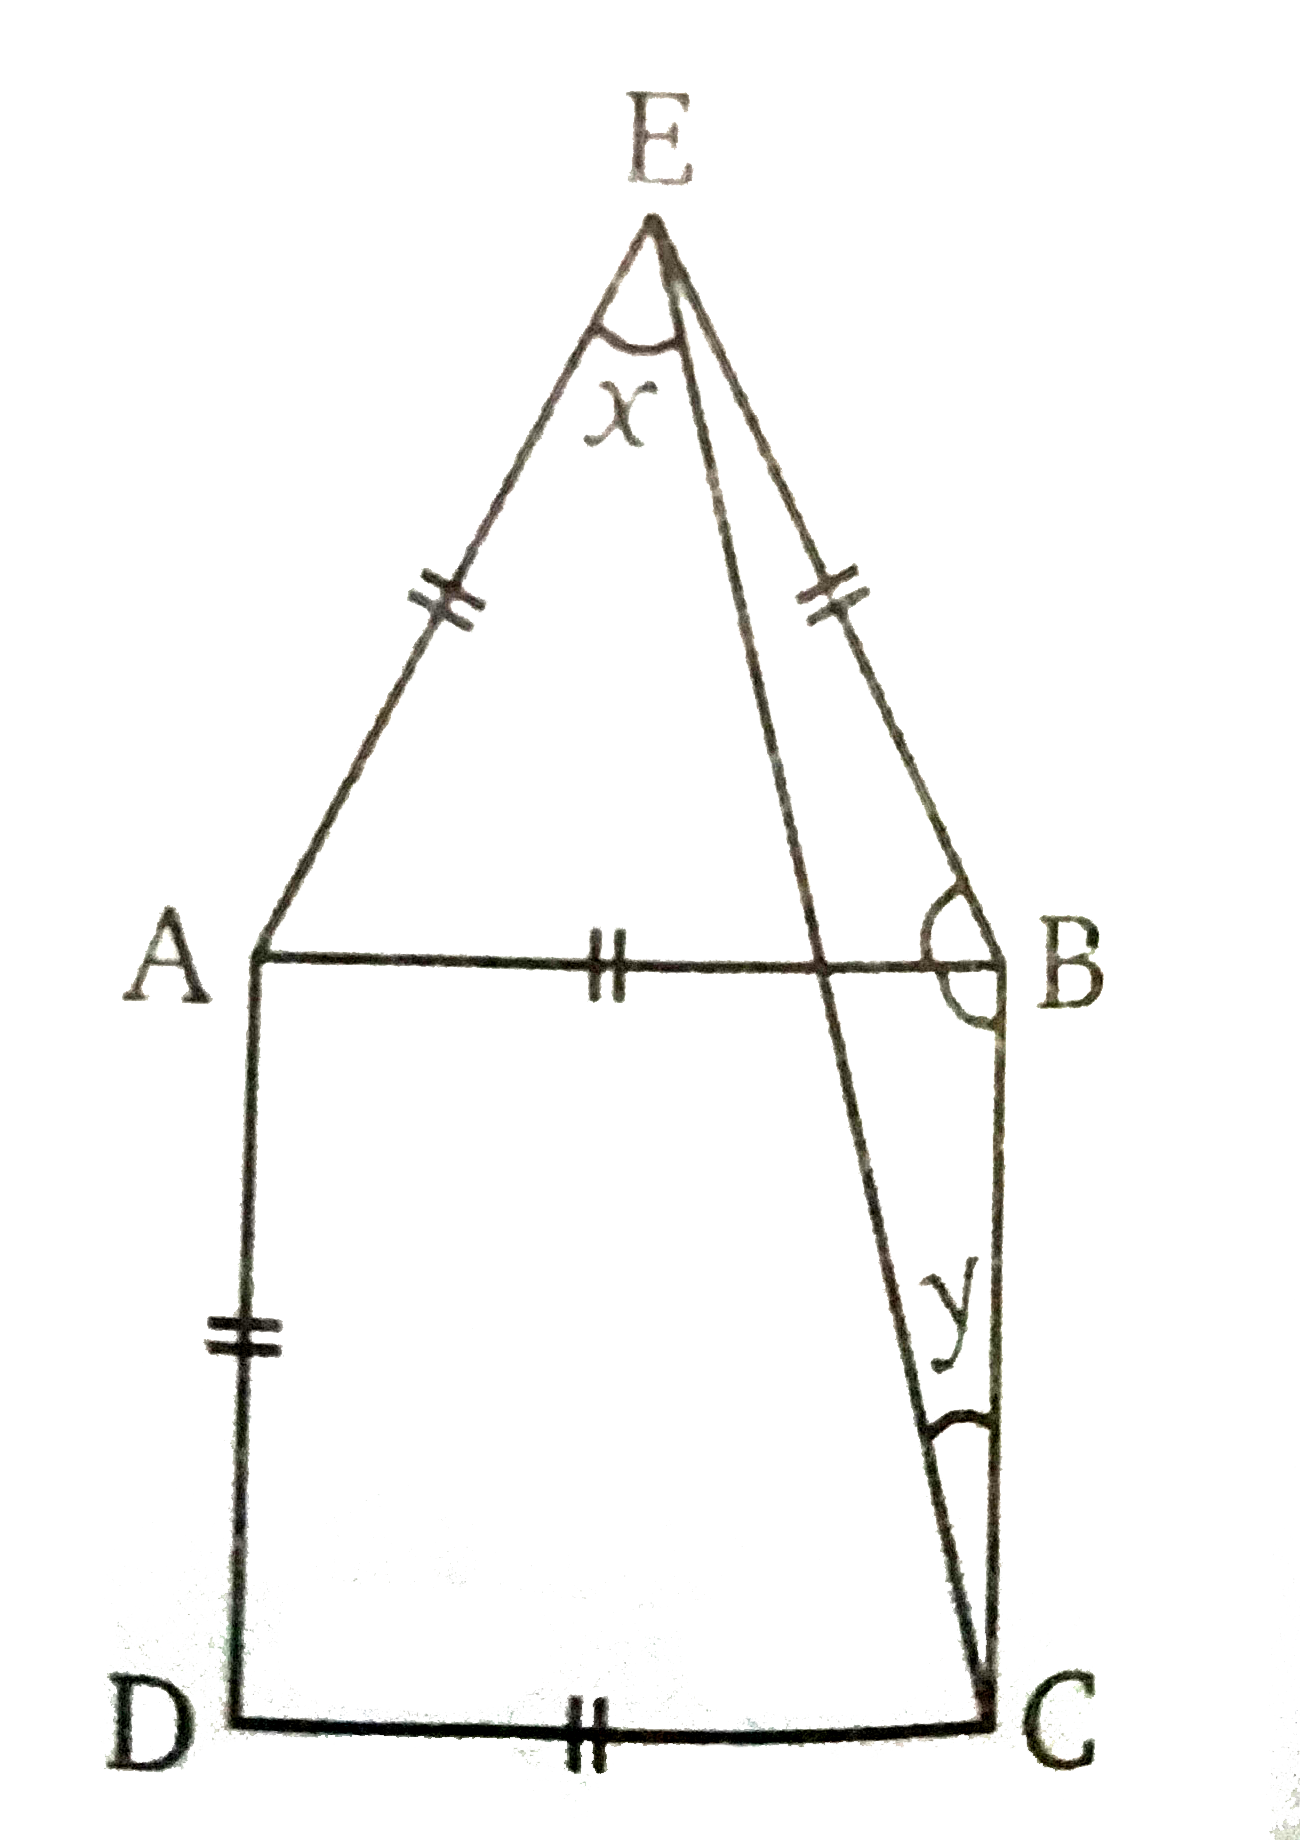 चित्र में, एक समबाहु त्रिभुज EAB , एक वर्ग  ABCD  के ऊपर अध्यारोपित है । x  और y  के मान ज्ञात कीजिए ।